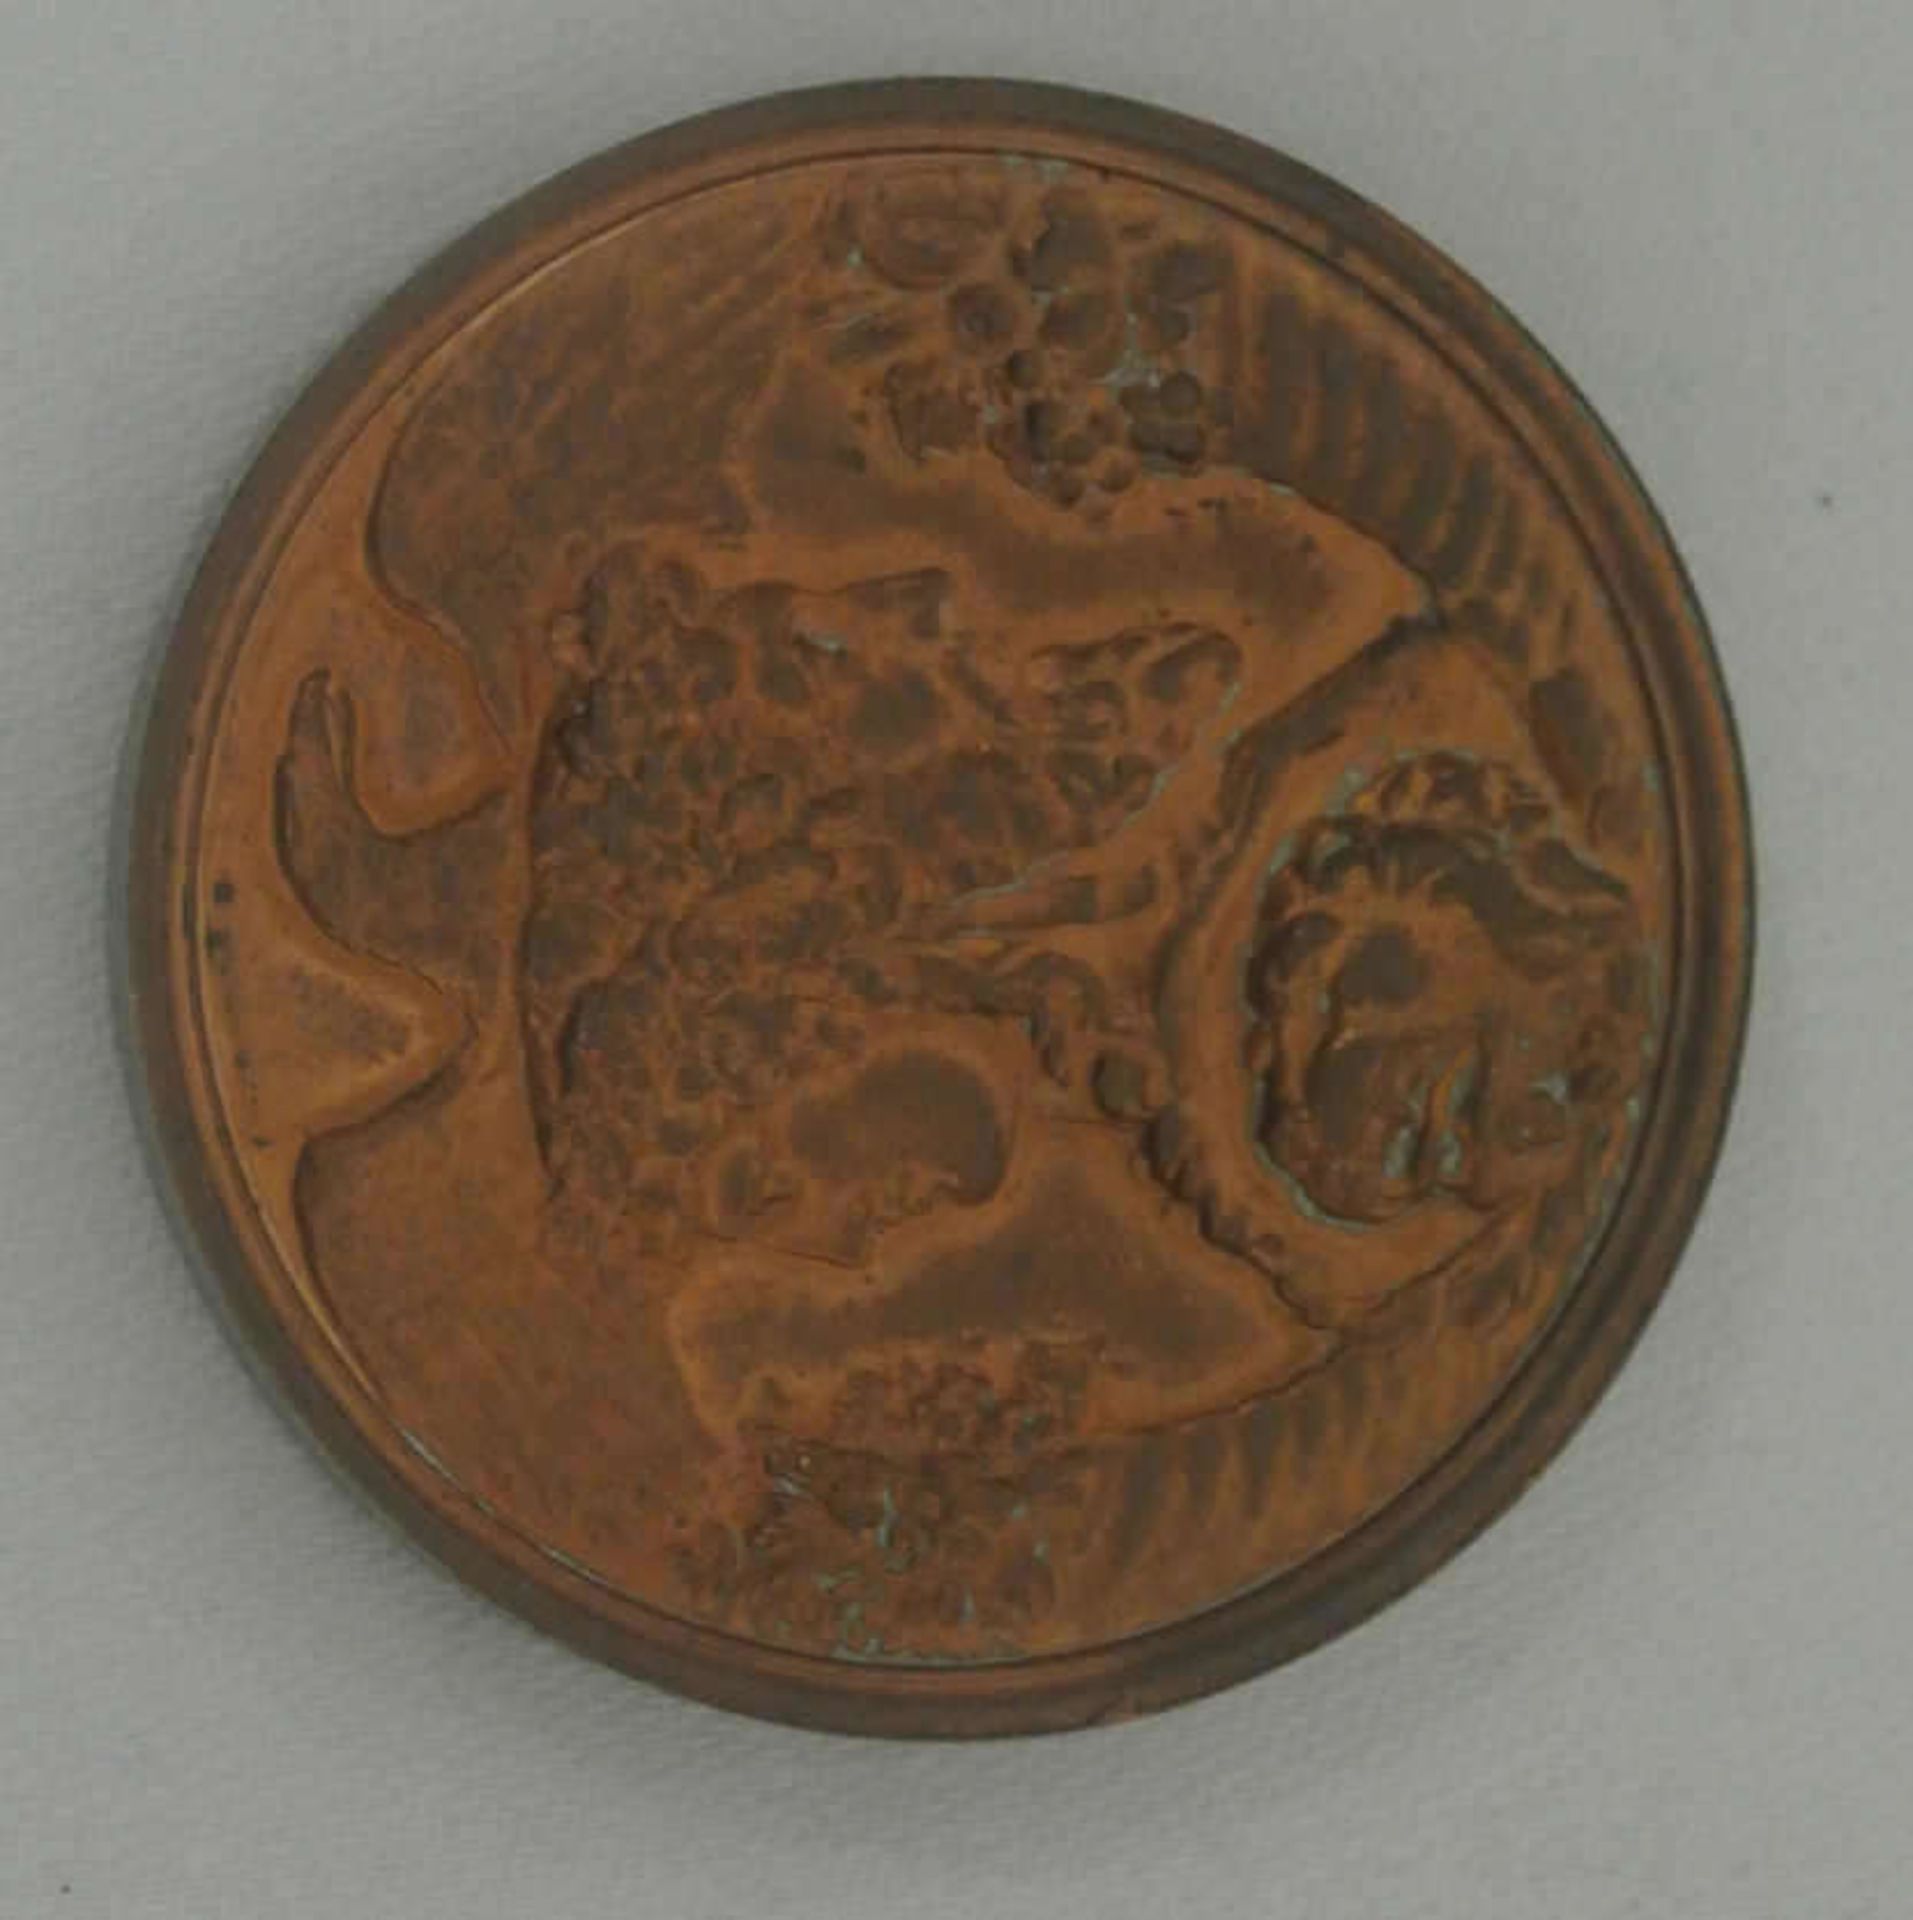 Goethe Medaille 1831, Personenmedaille von A. Bovy, Geschenk für "Hervorragende Freunde",